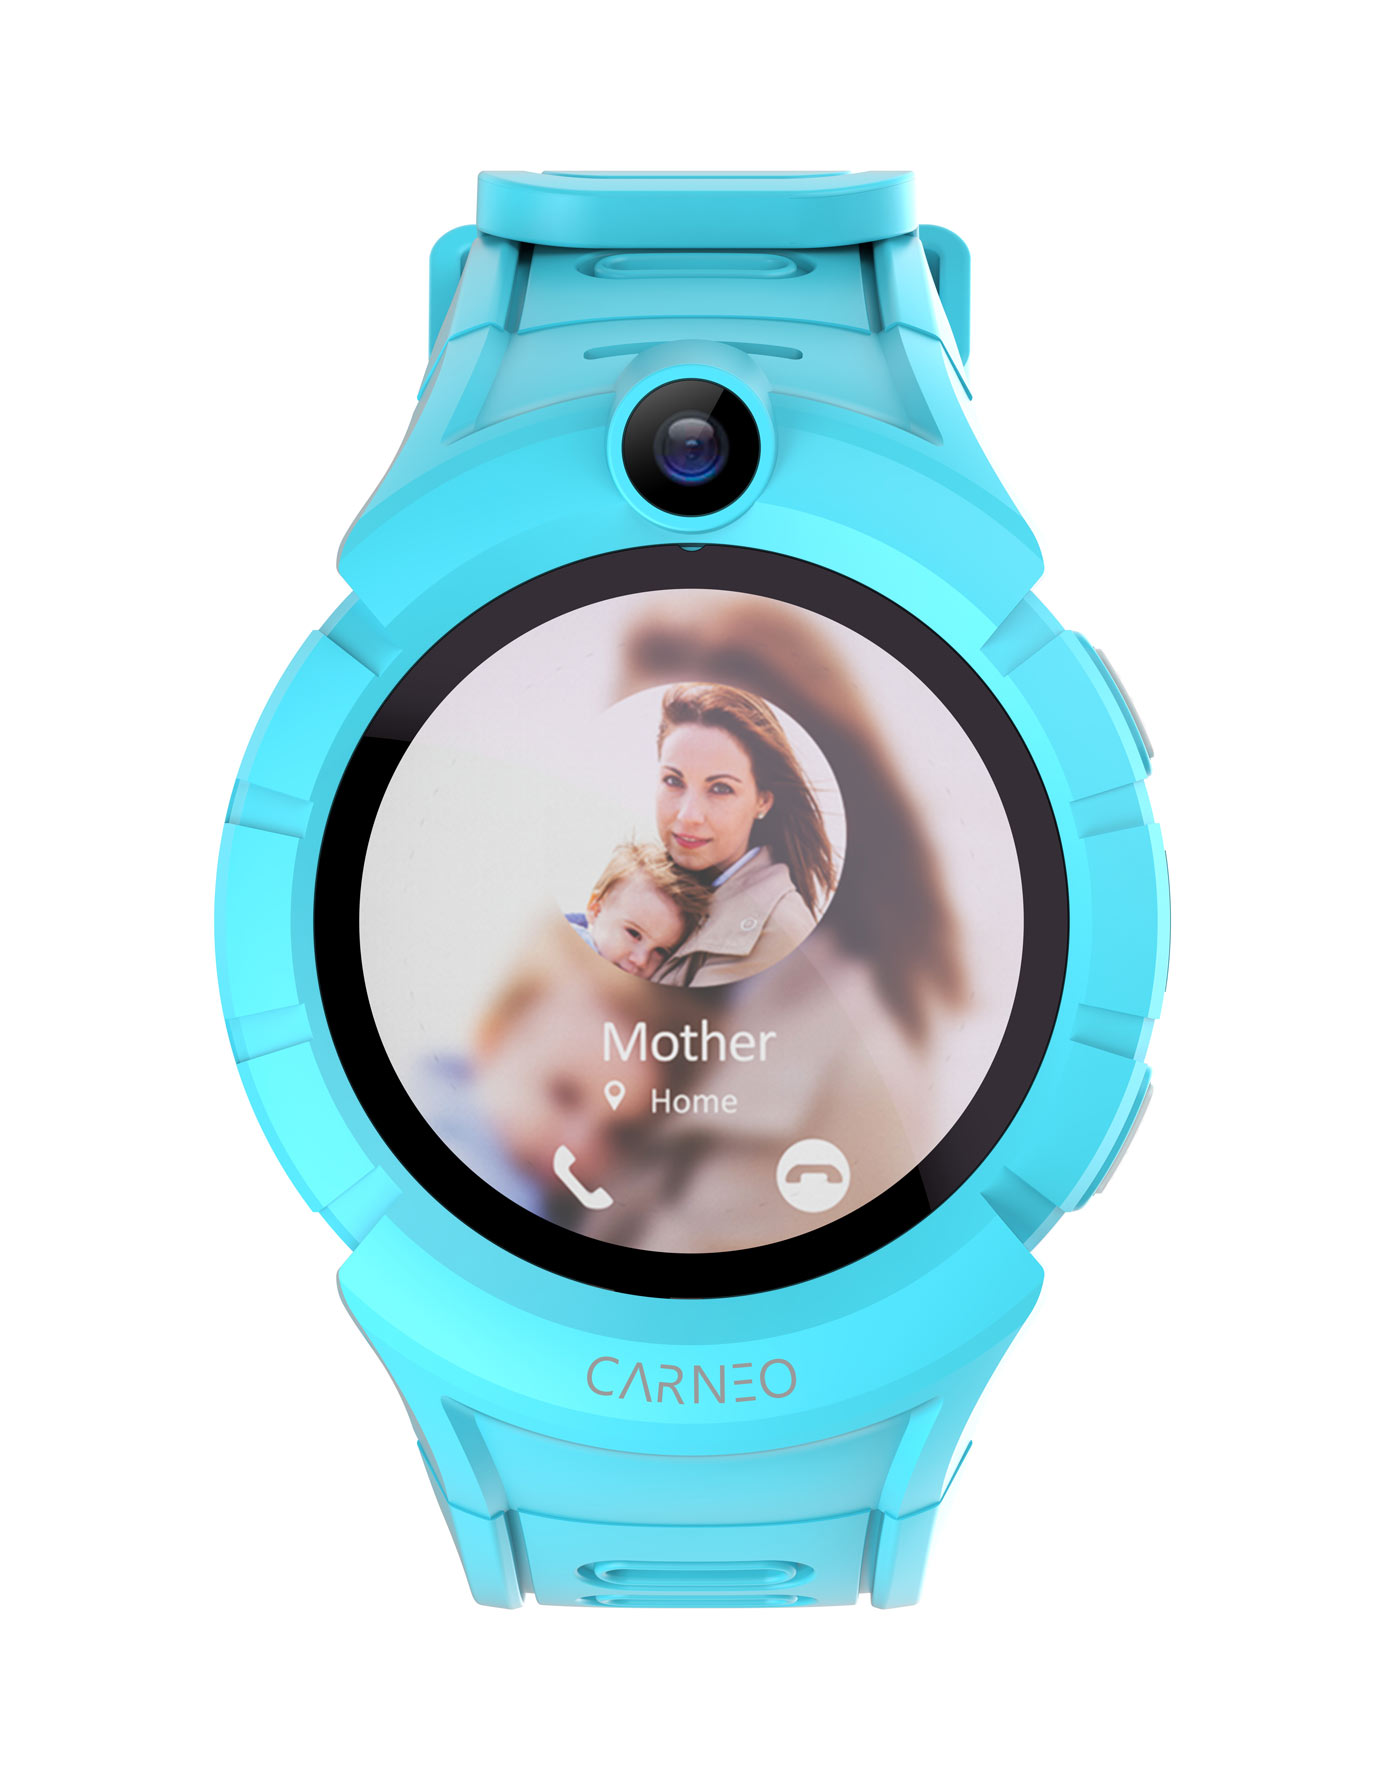 CARNEO Guard Kinder GPS + Smartwatch, Blau mini blue